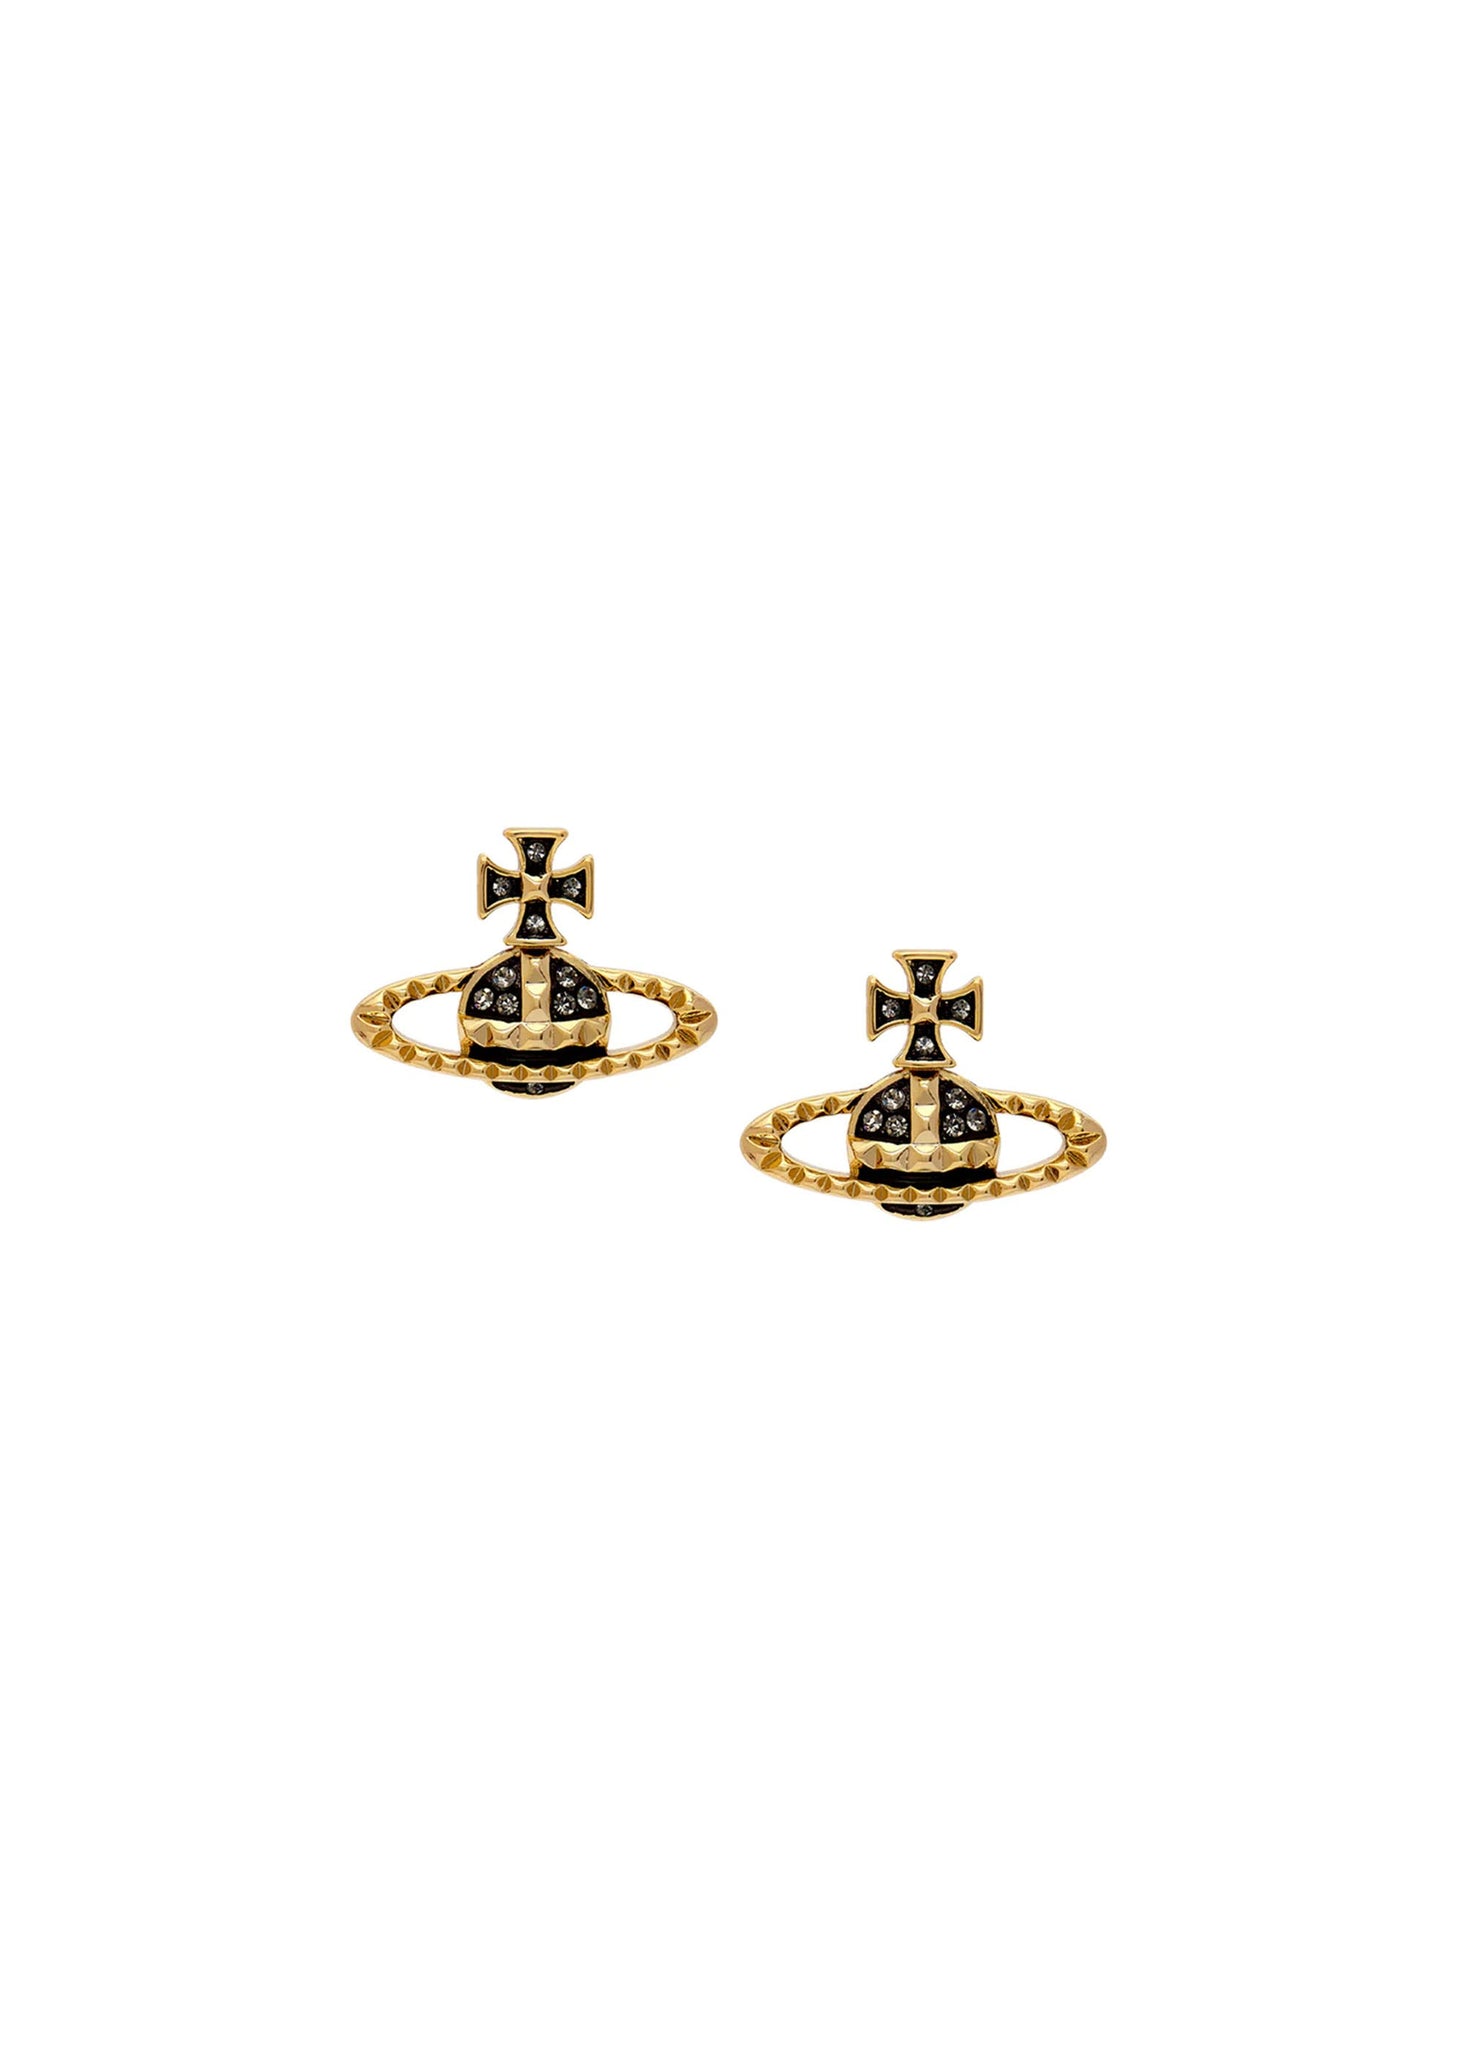 Vivienne Westwood Mayfair Bas Relief Earrings - Gold